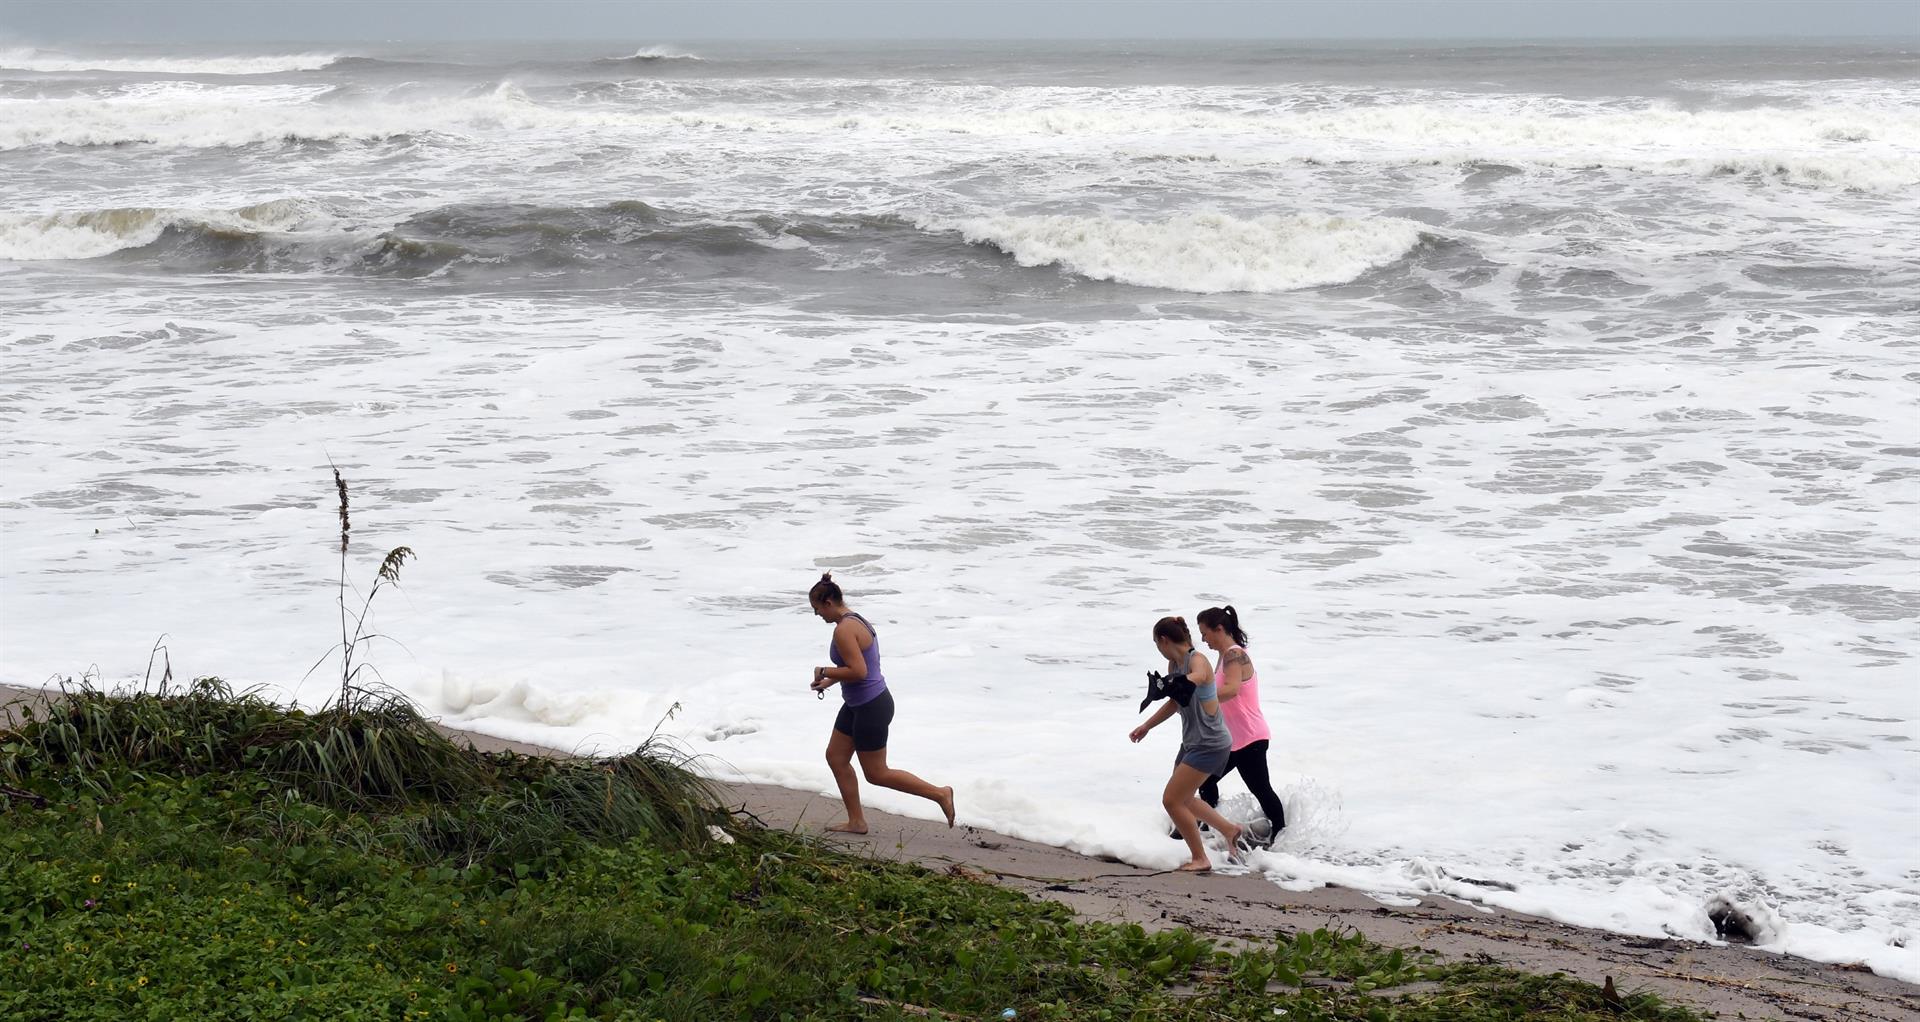 Curiosos caminan cerca de las olas que causa el huracán Dorian en el paseo marítimo de Juno Beach, Florida (Estados Unidos). Imagen de archivo.EFE/ Jim Rassol
